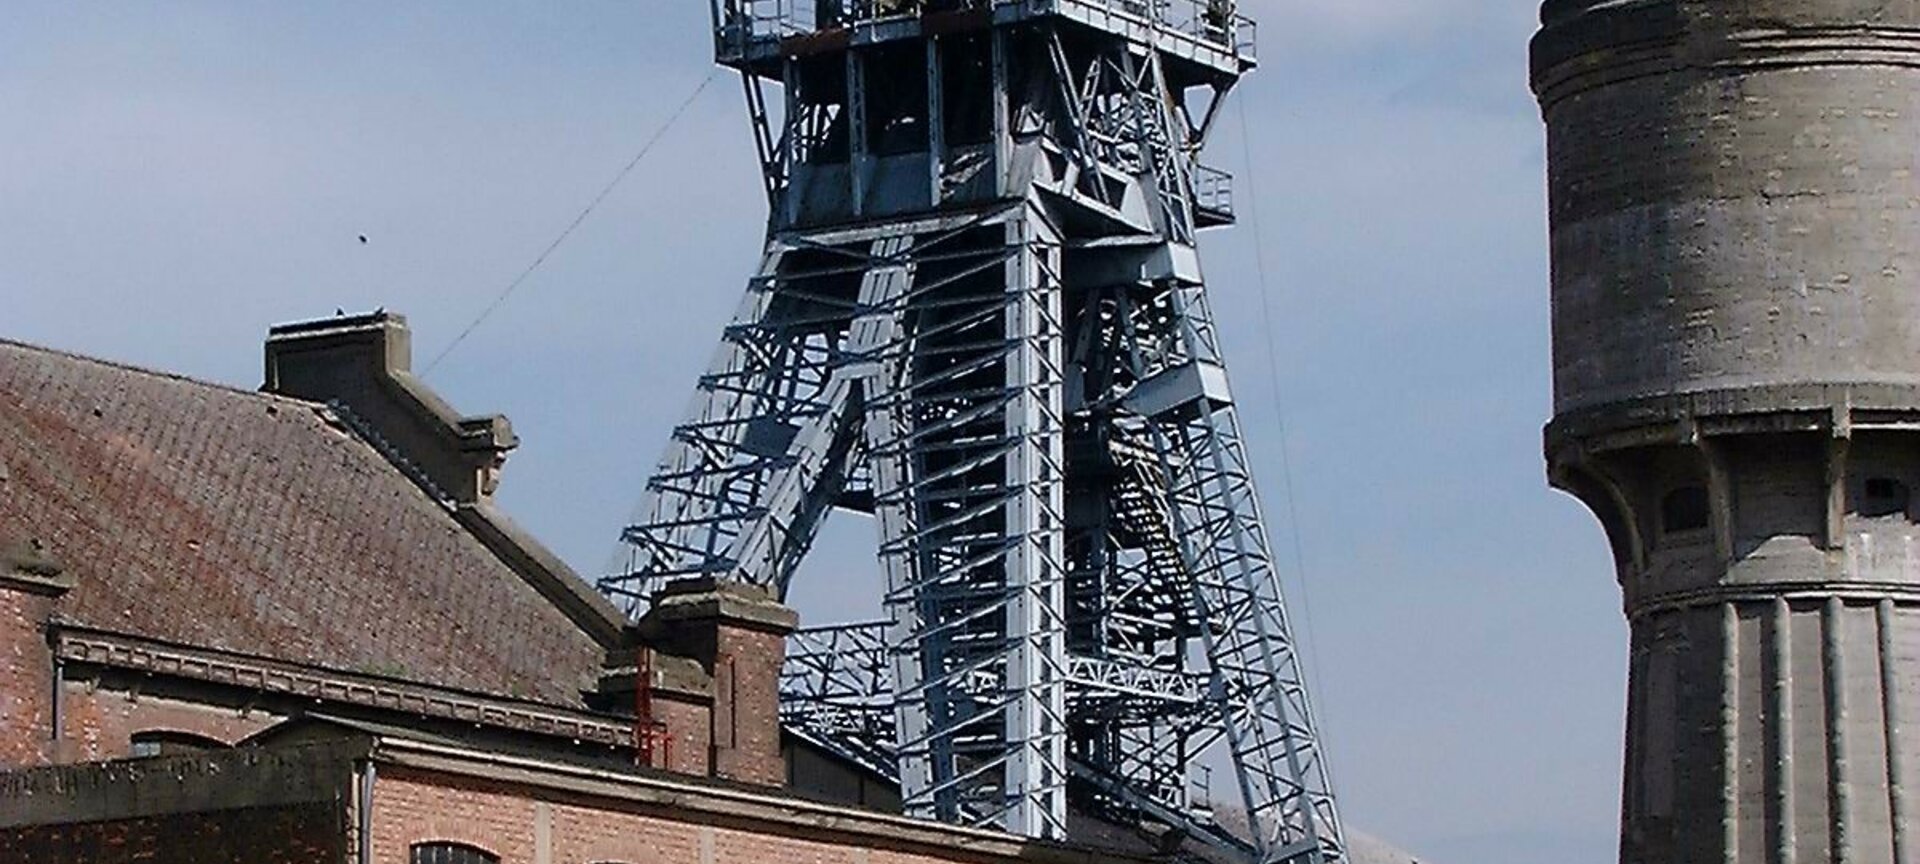 Schachttoren - Schachttoren en Watertoren mijnsite Zolder